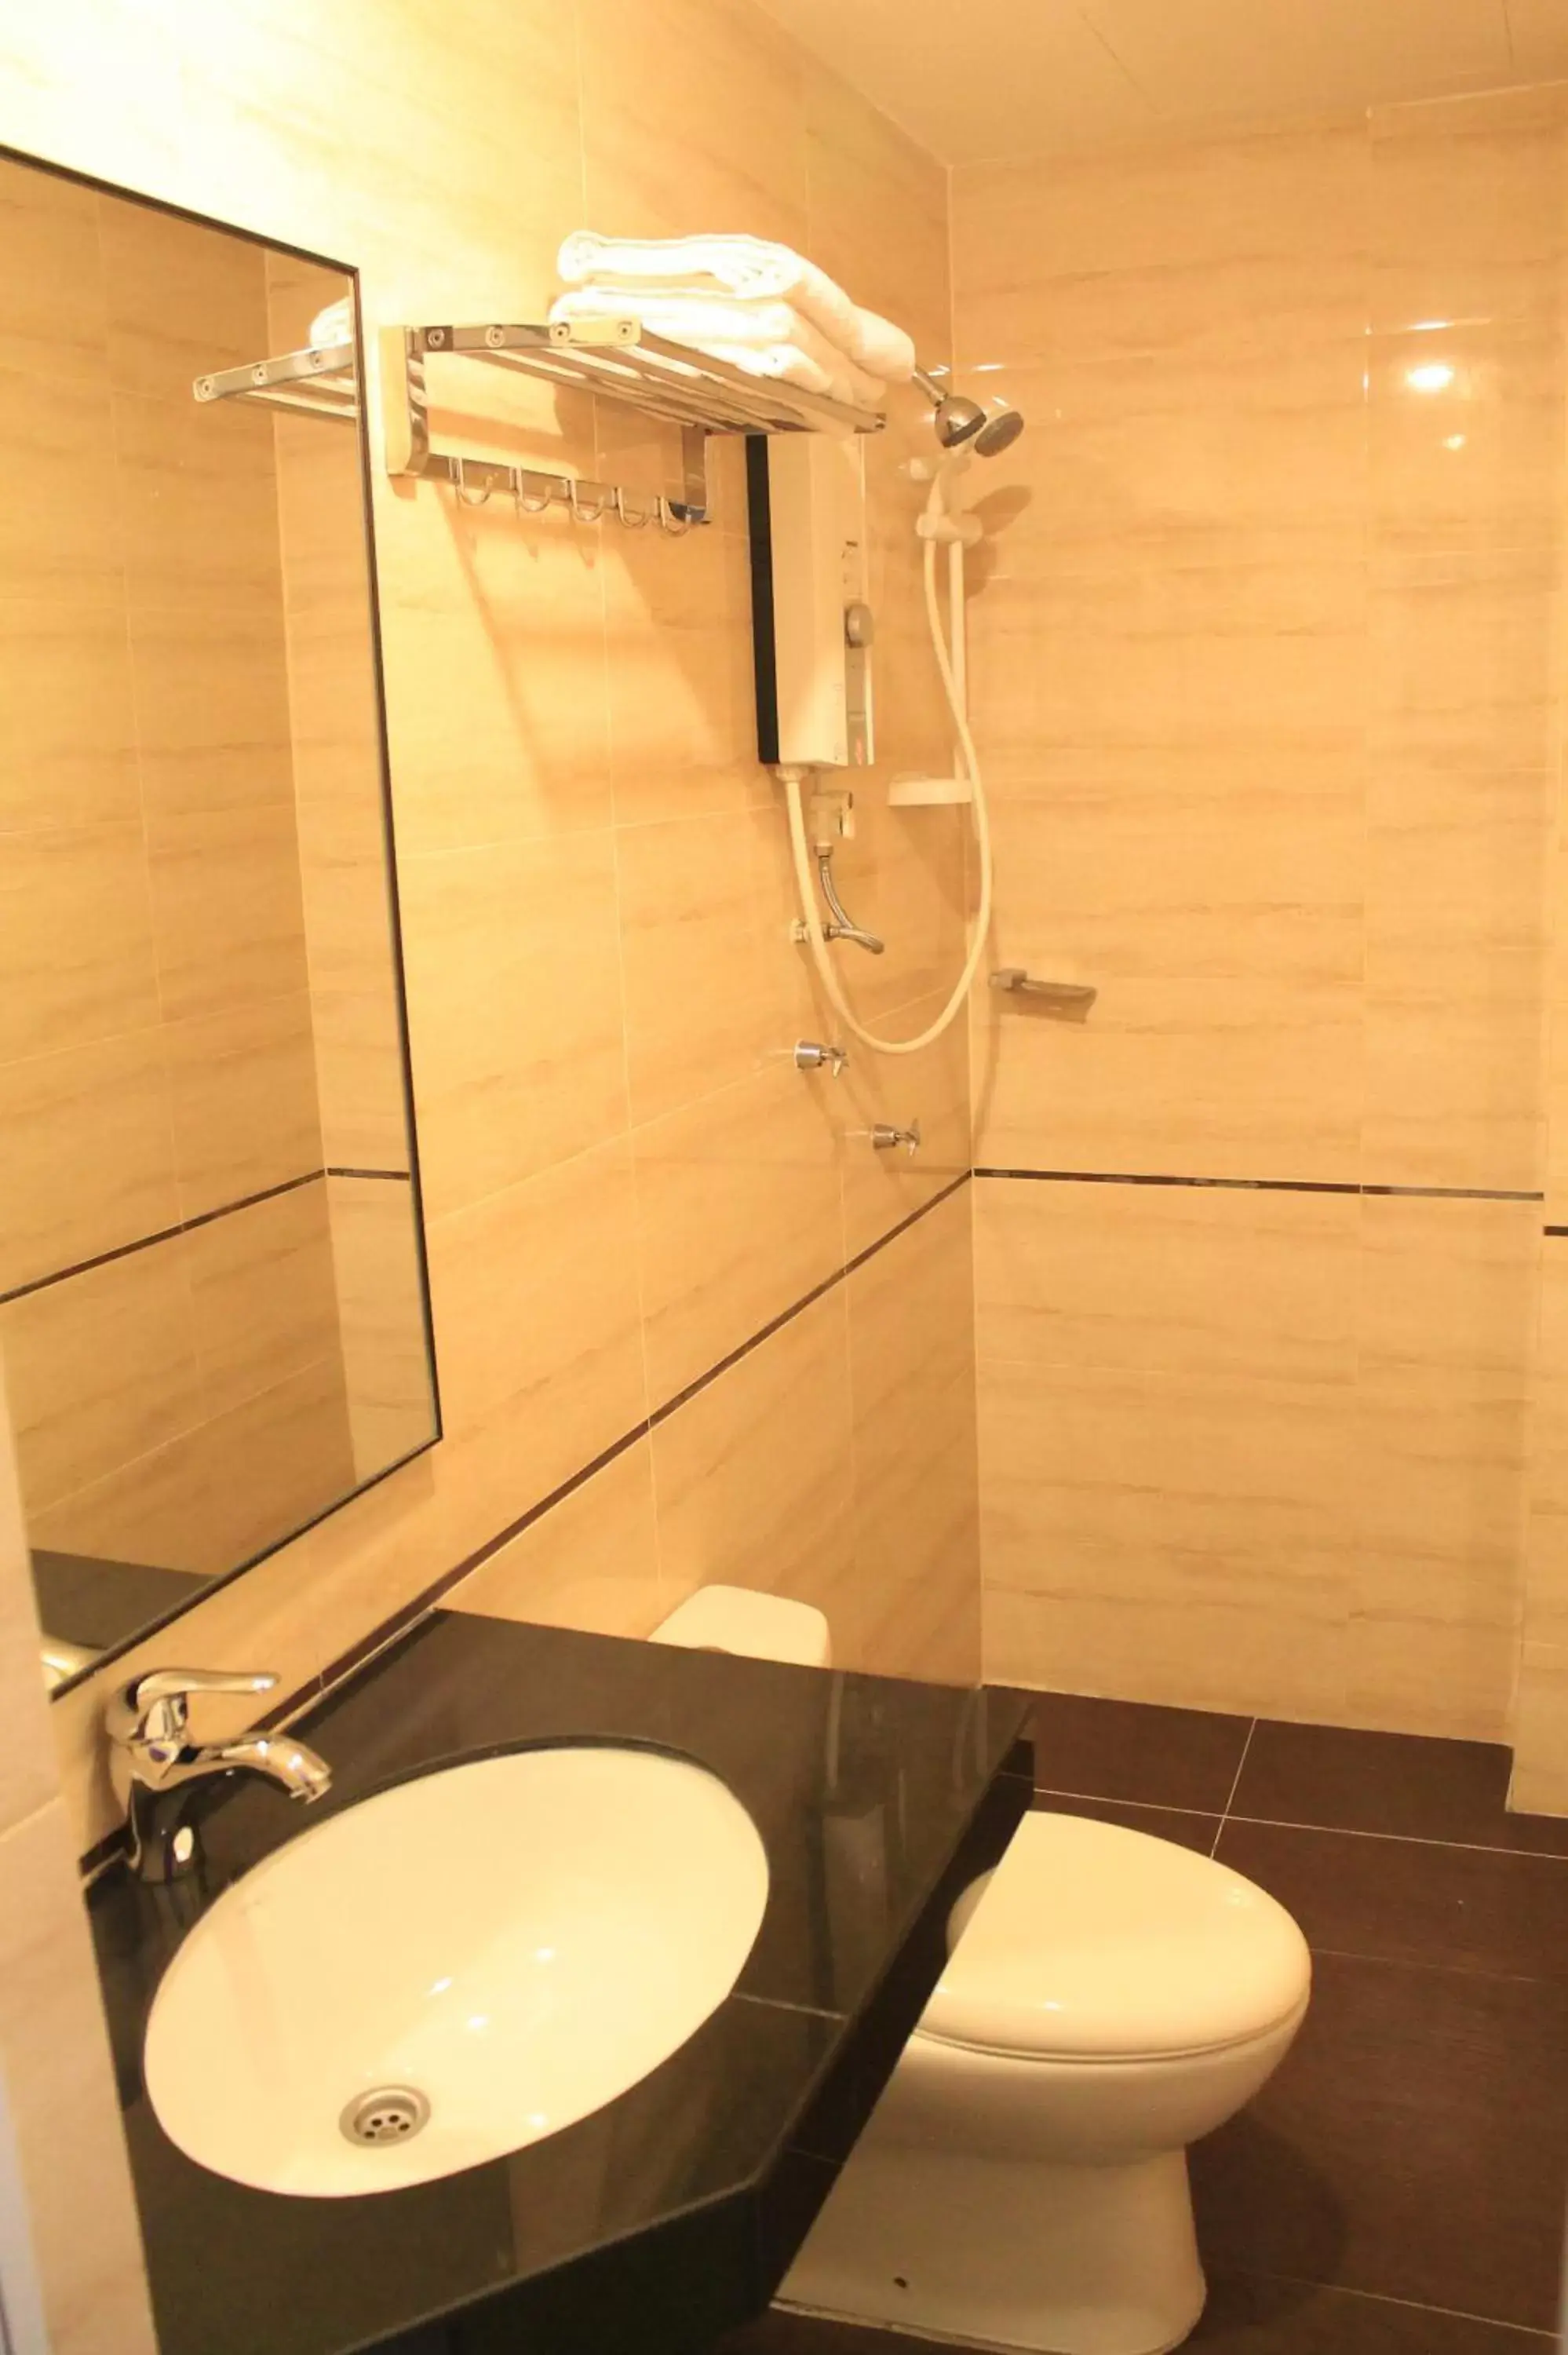 Bathroom in AG Hotel Penang